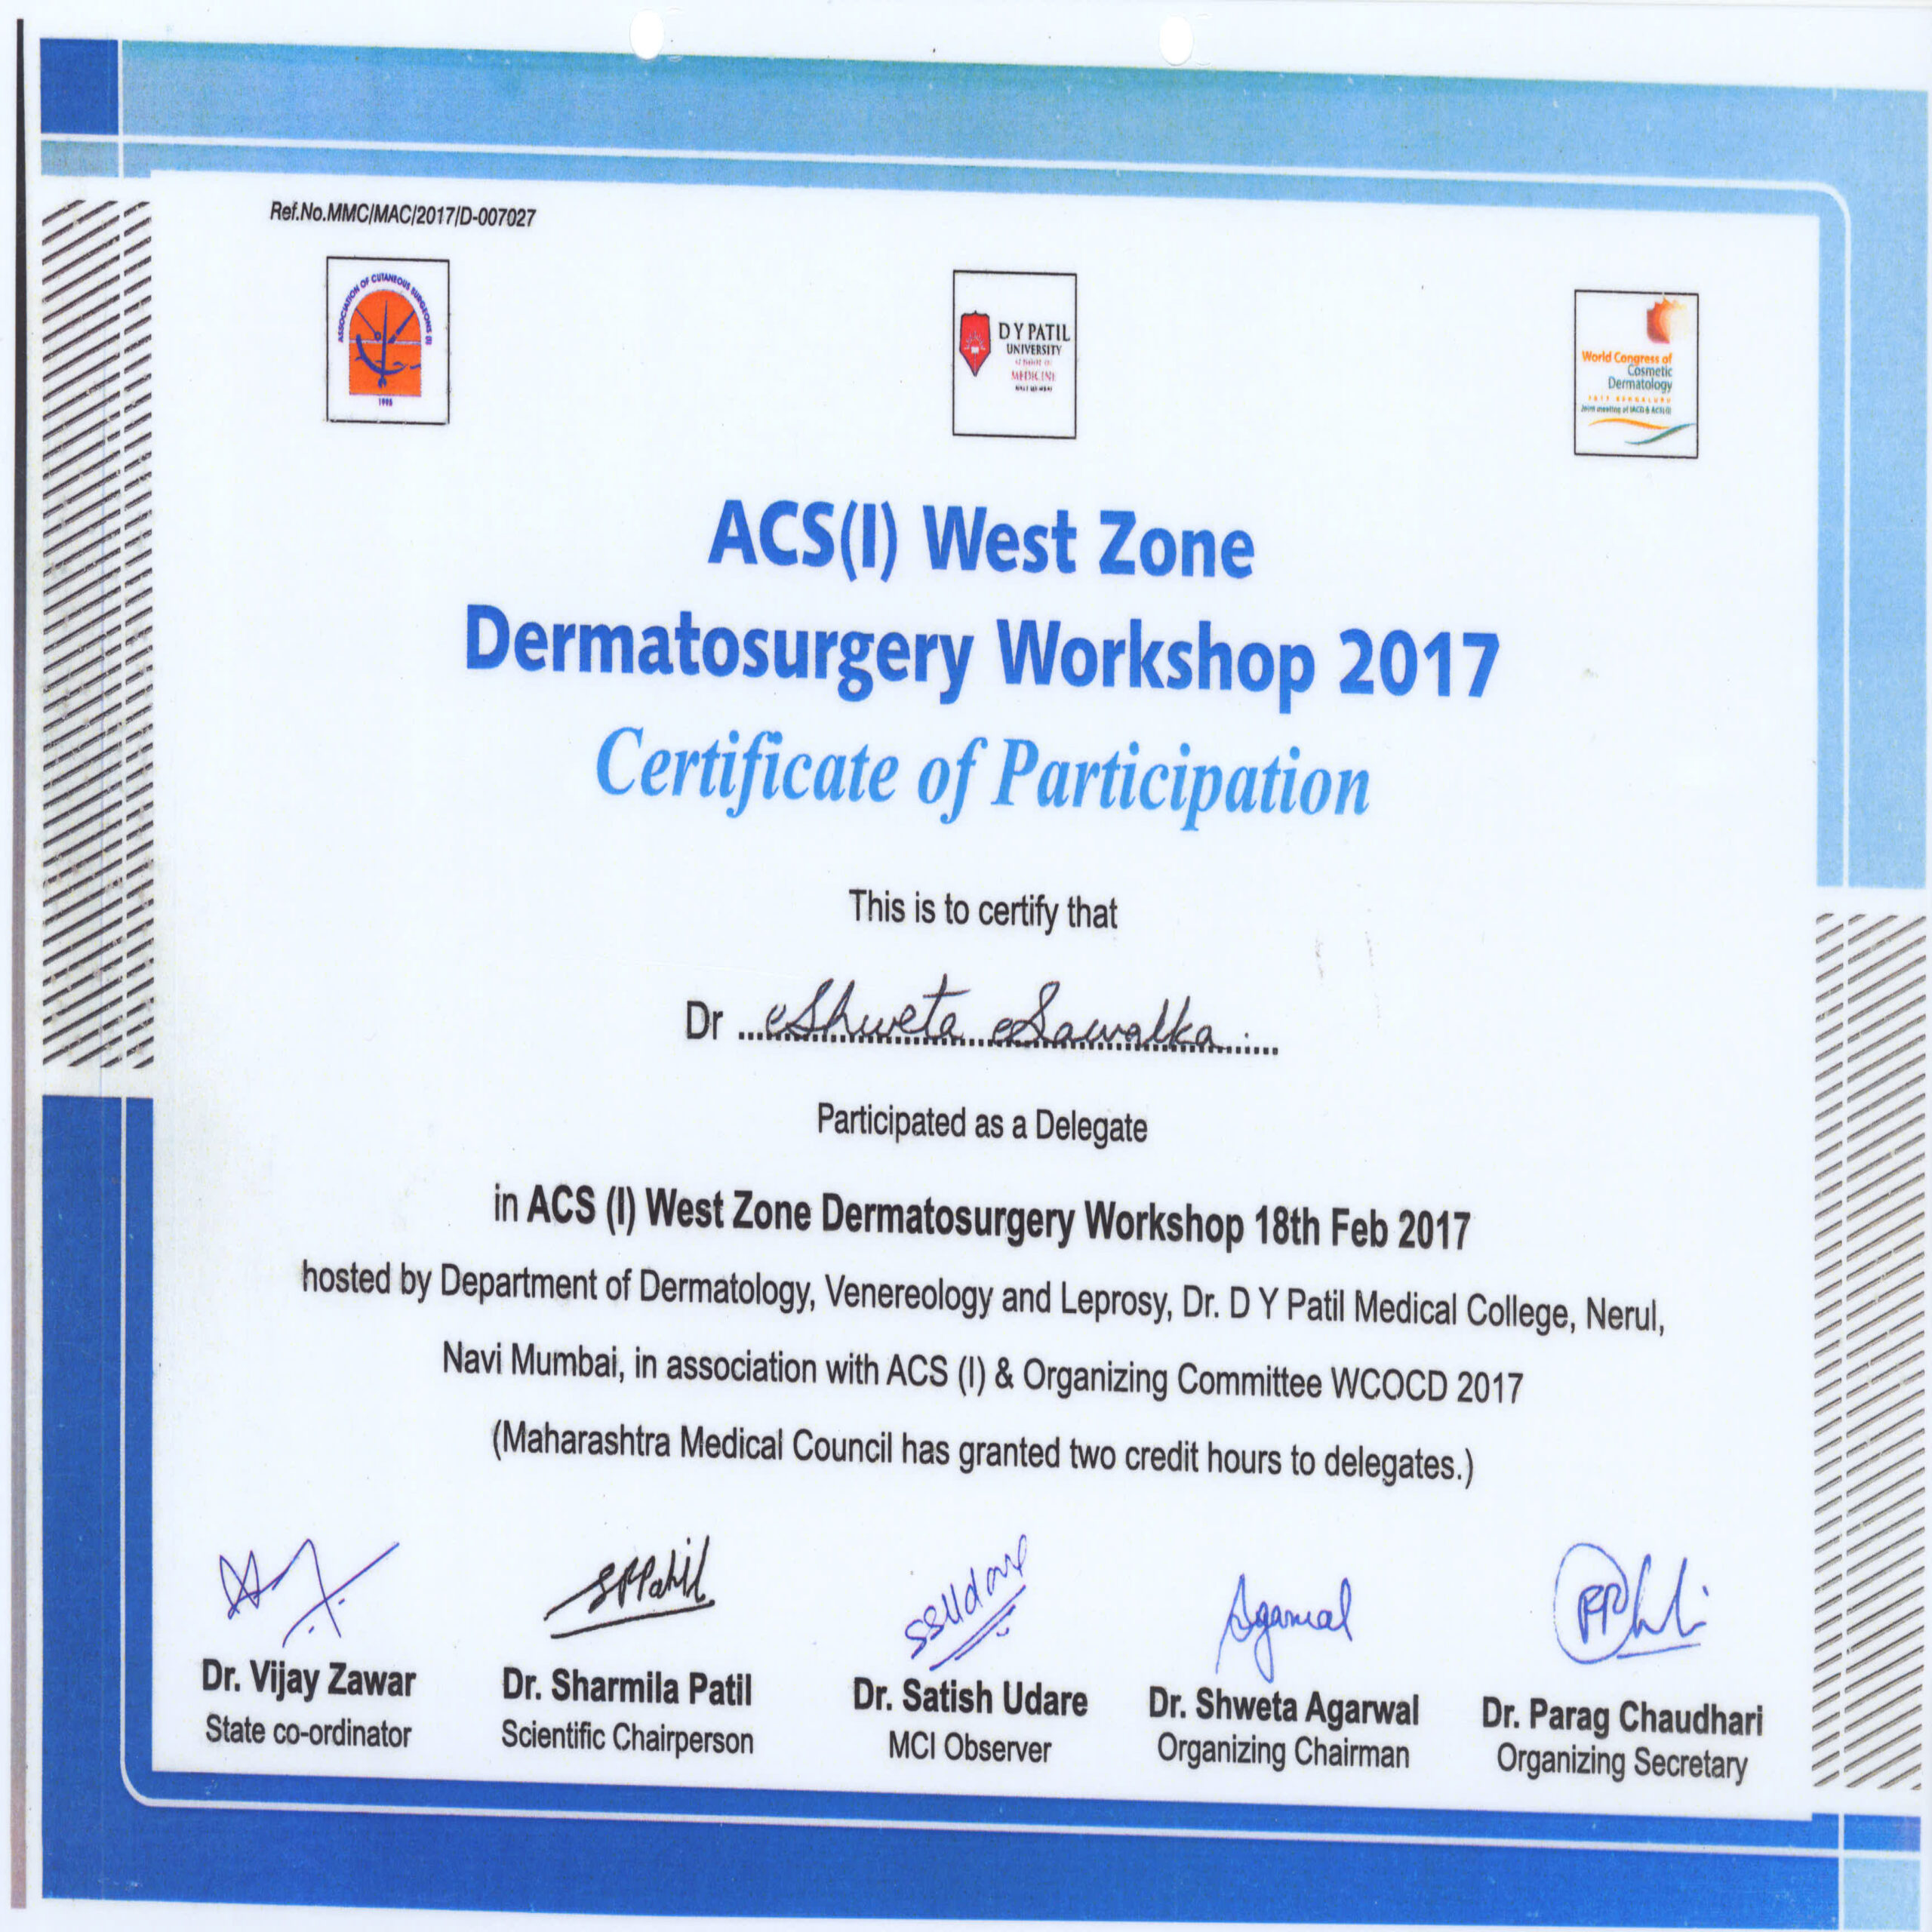 ACS(I) West Zone Dermatosurgery Workshop 2017